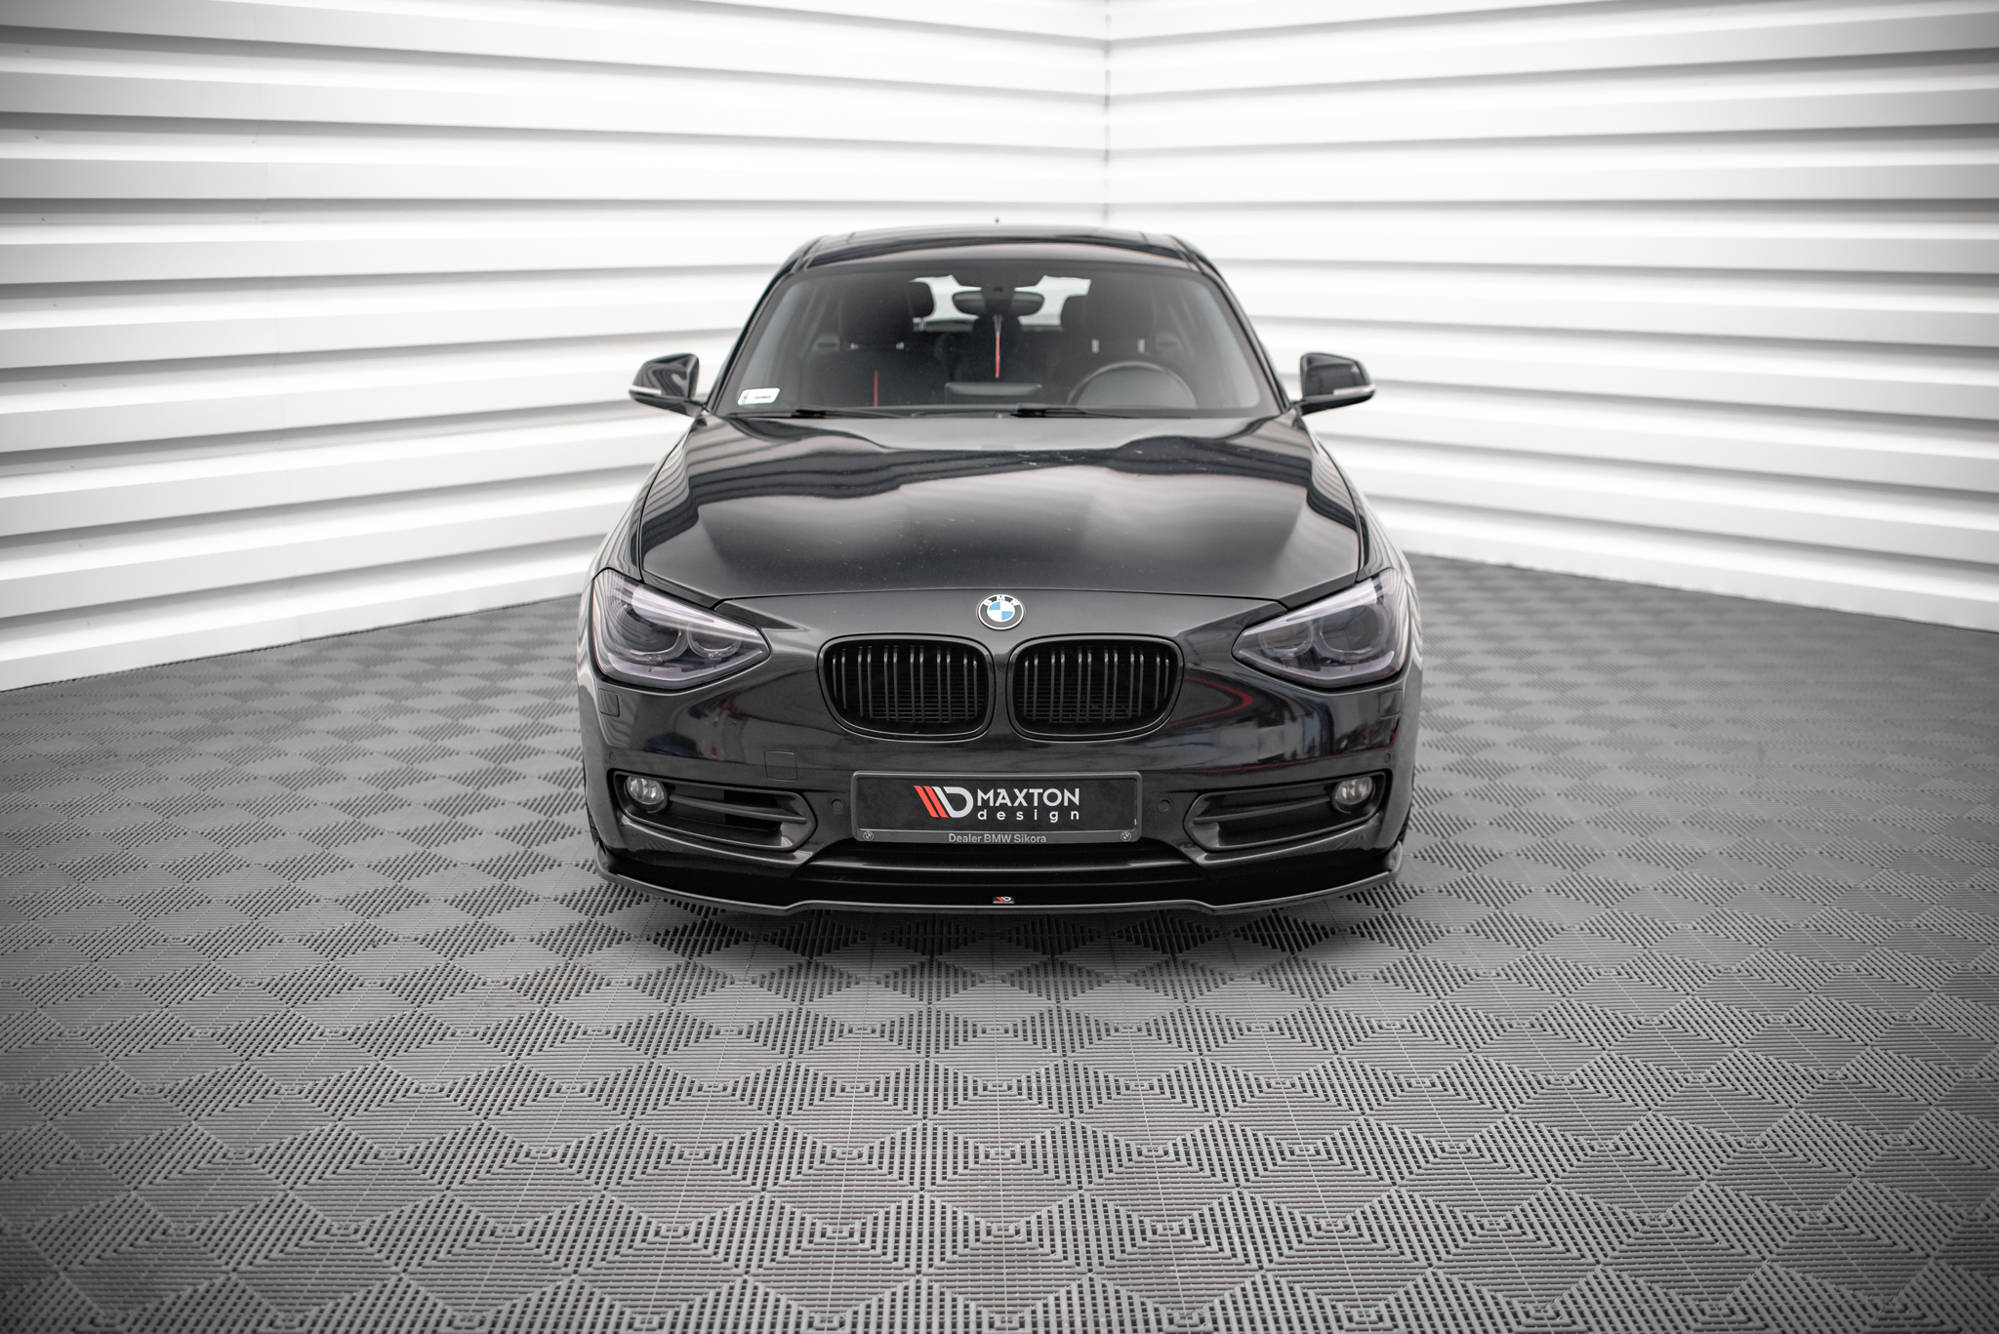 Front Ansatz V.1 für BMW 1er F20 Carbon Look – Tuning King